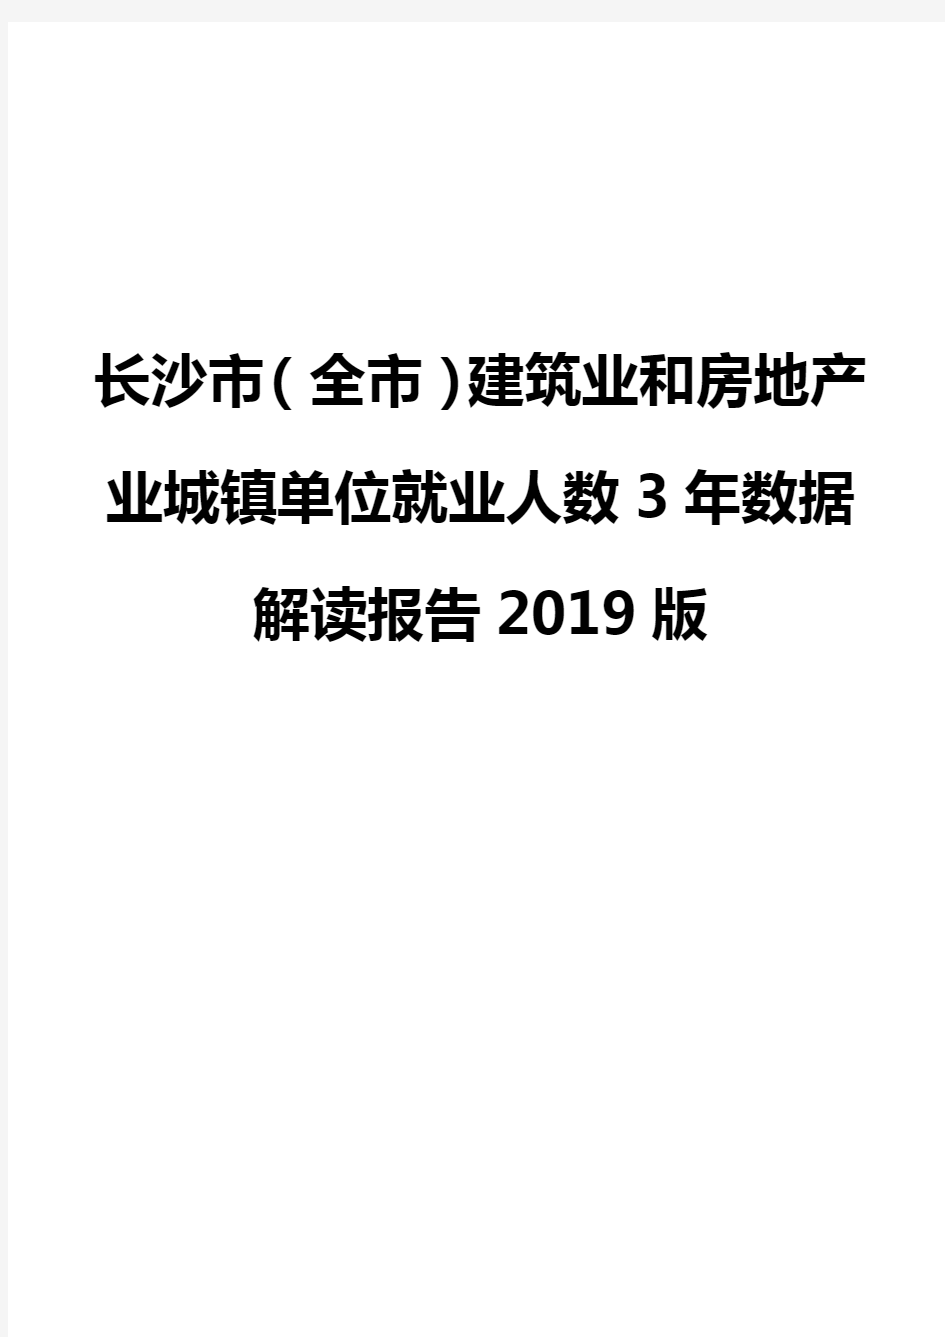 长沙市(全市)建筑业和房地产业城镇单位就业人数3年数据解读报告2019版